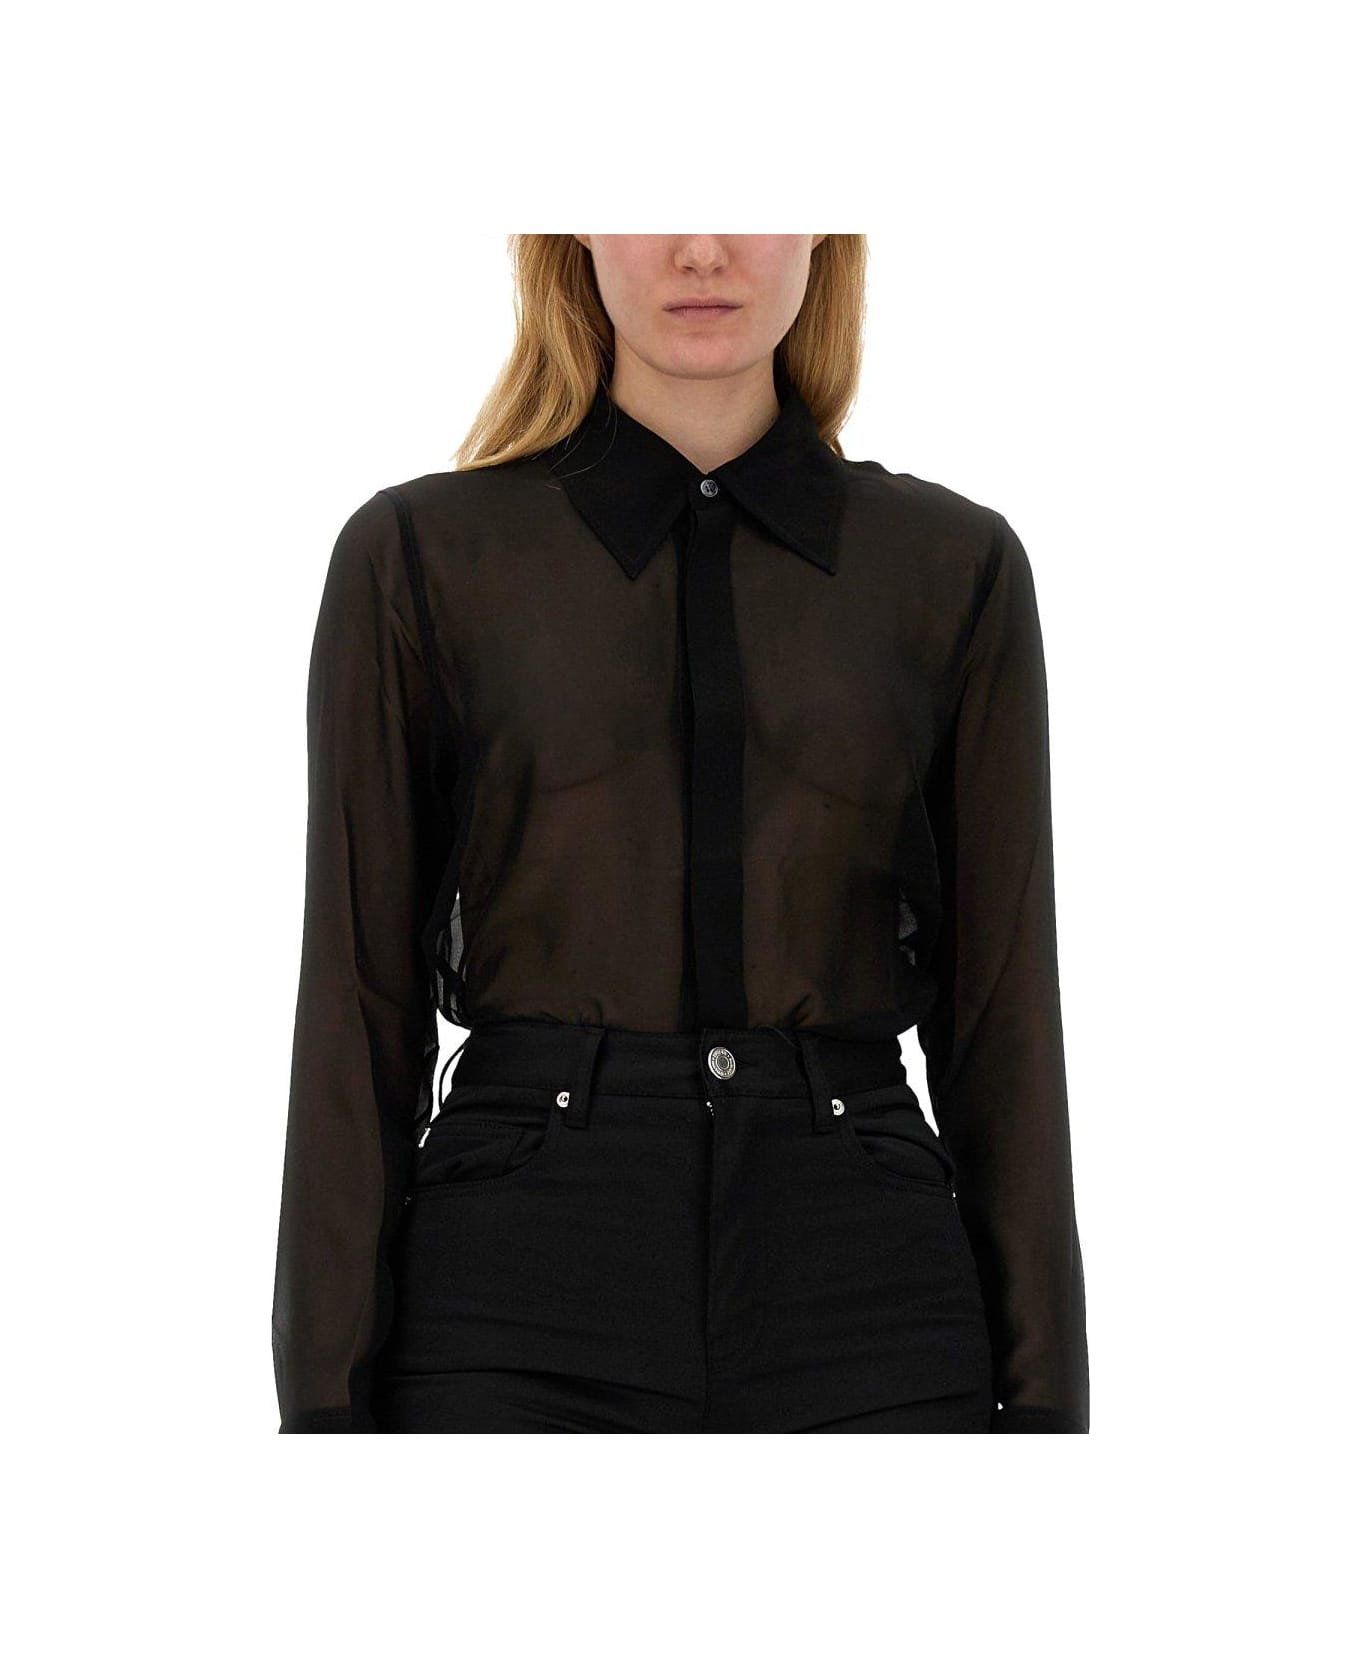 Ami Alexandre Mattiussi Paris Semi-sheer Long-sleeved Shirt - BLACK